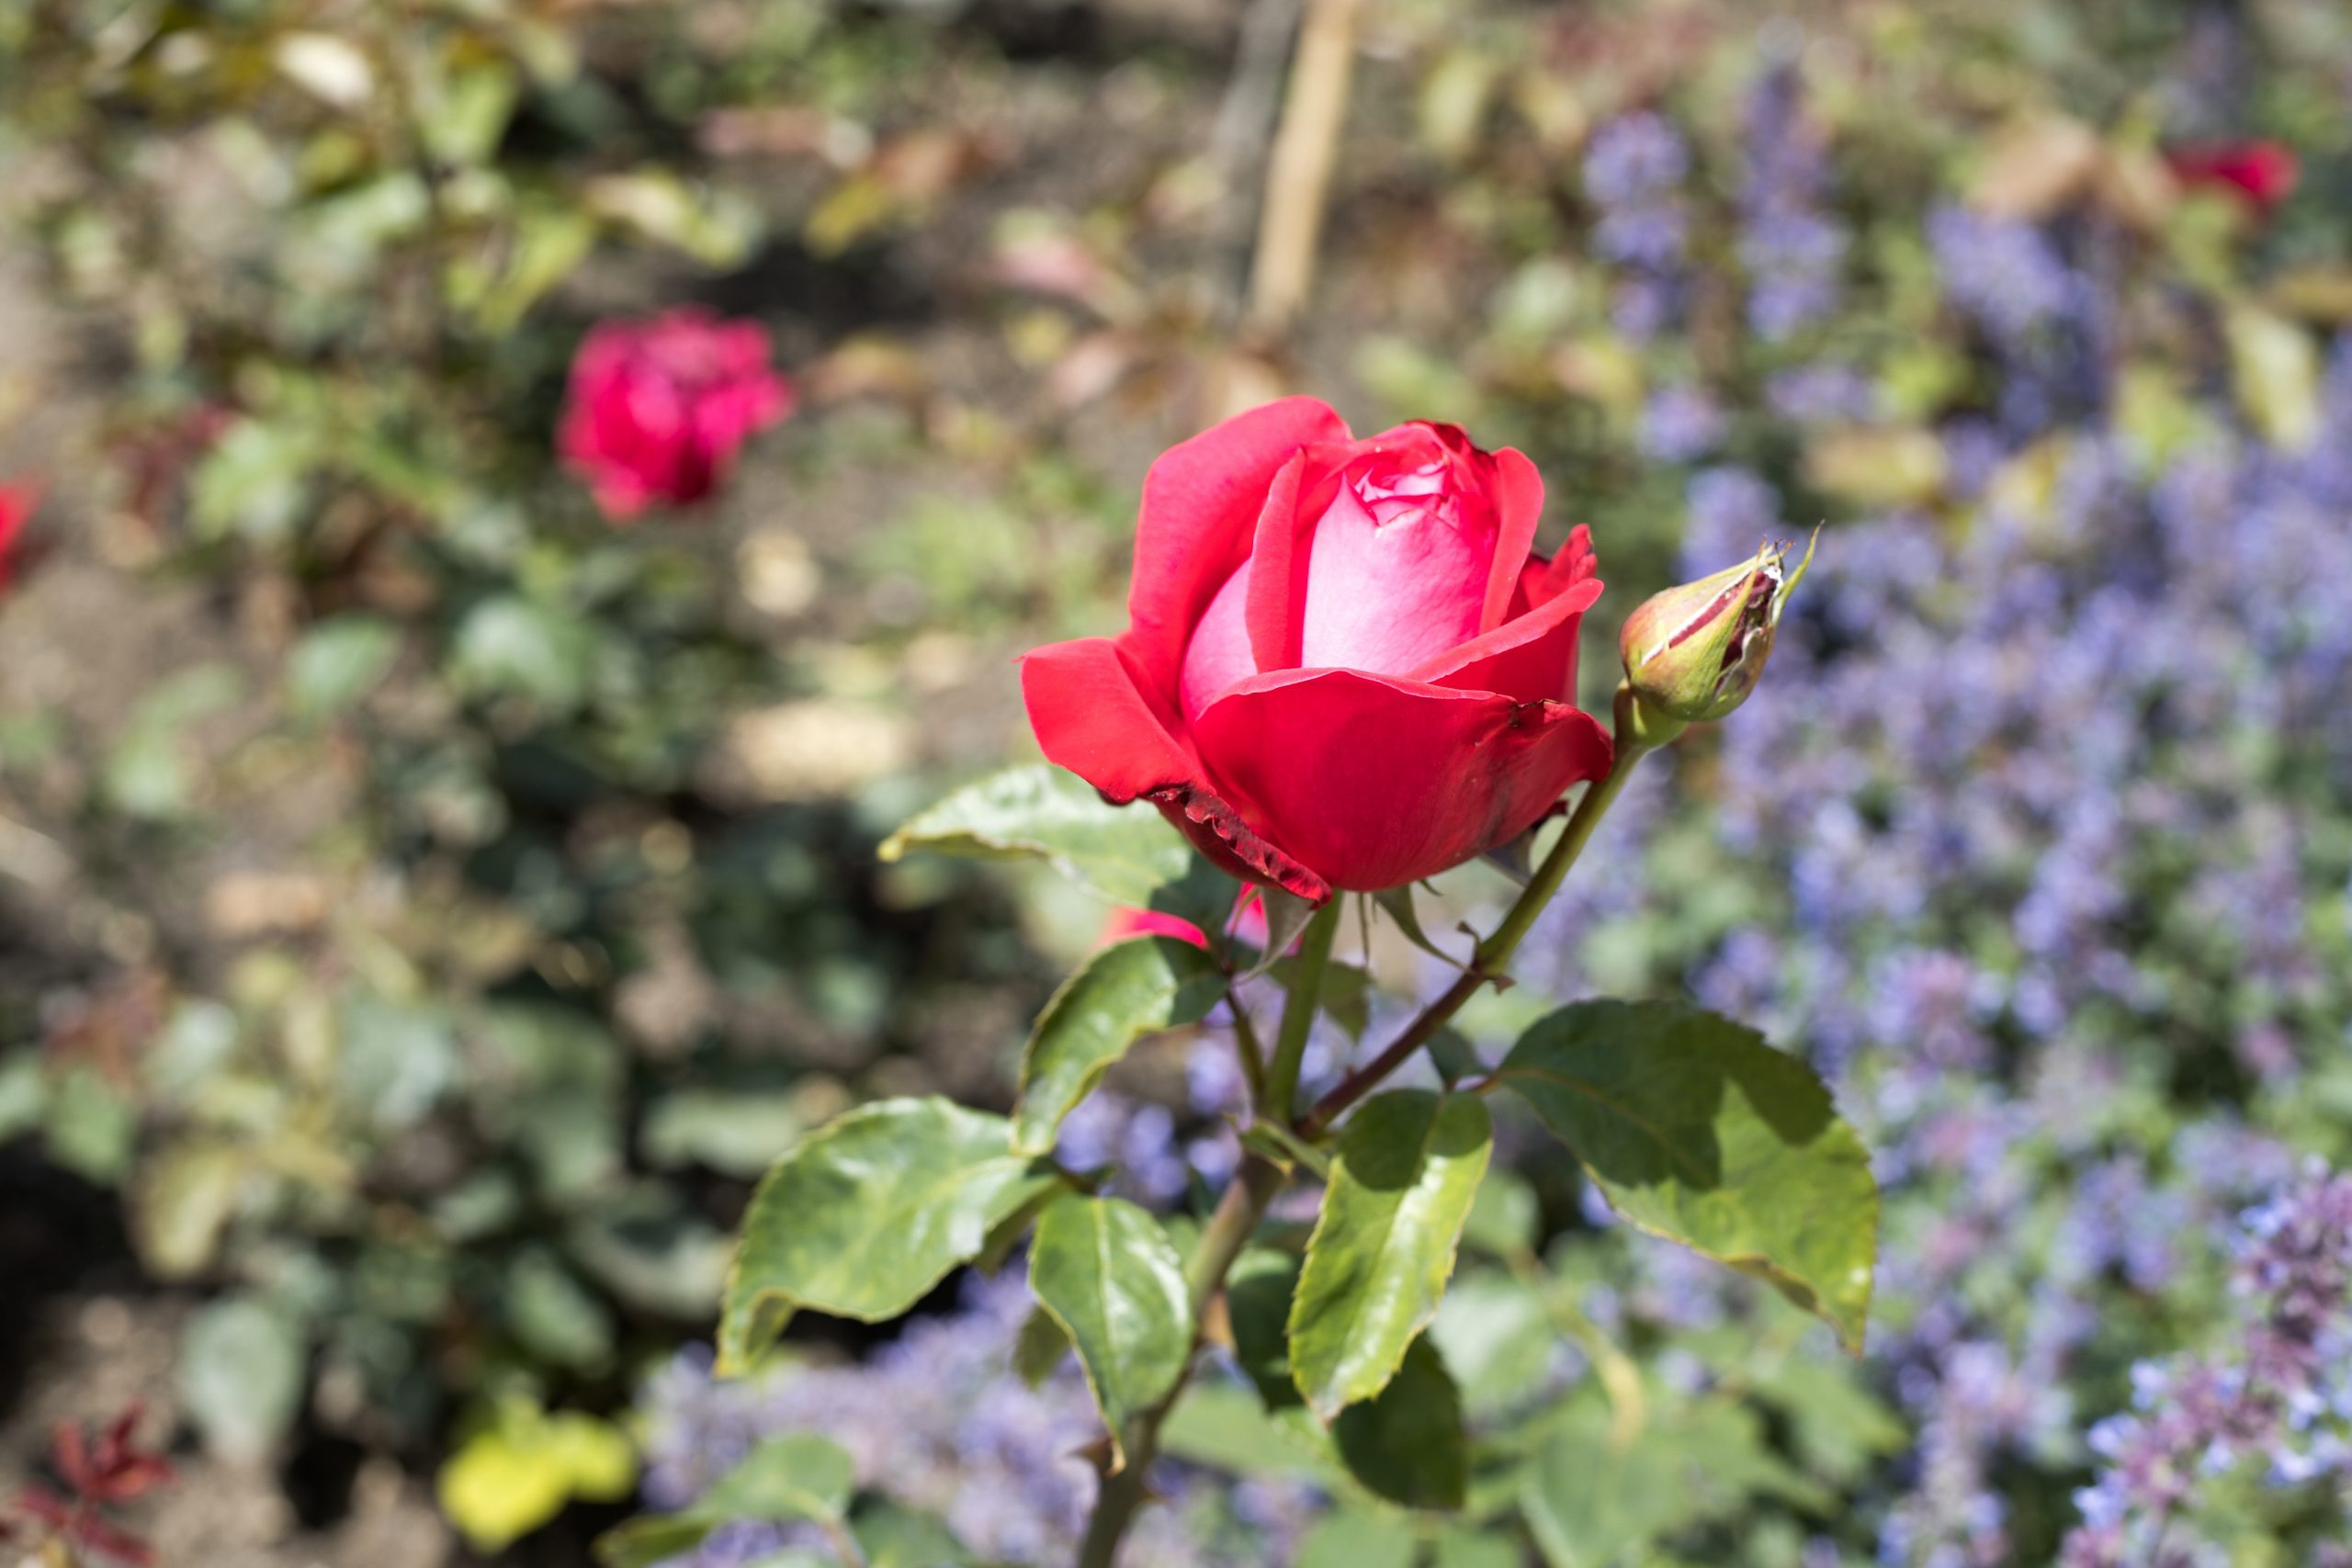 Růžová zahrada na Petříně & Květnice